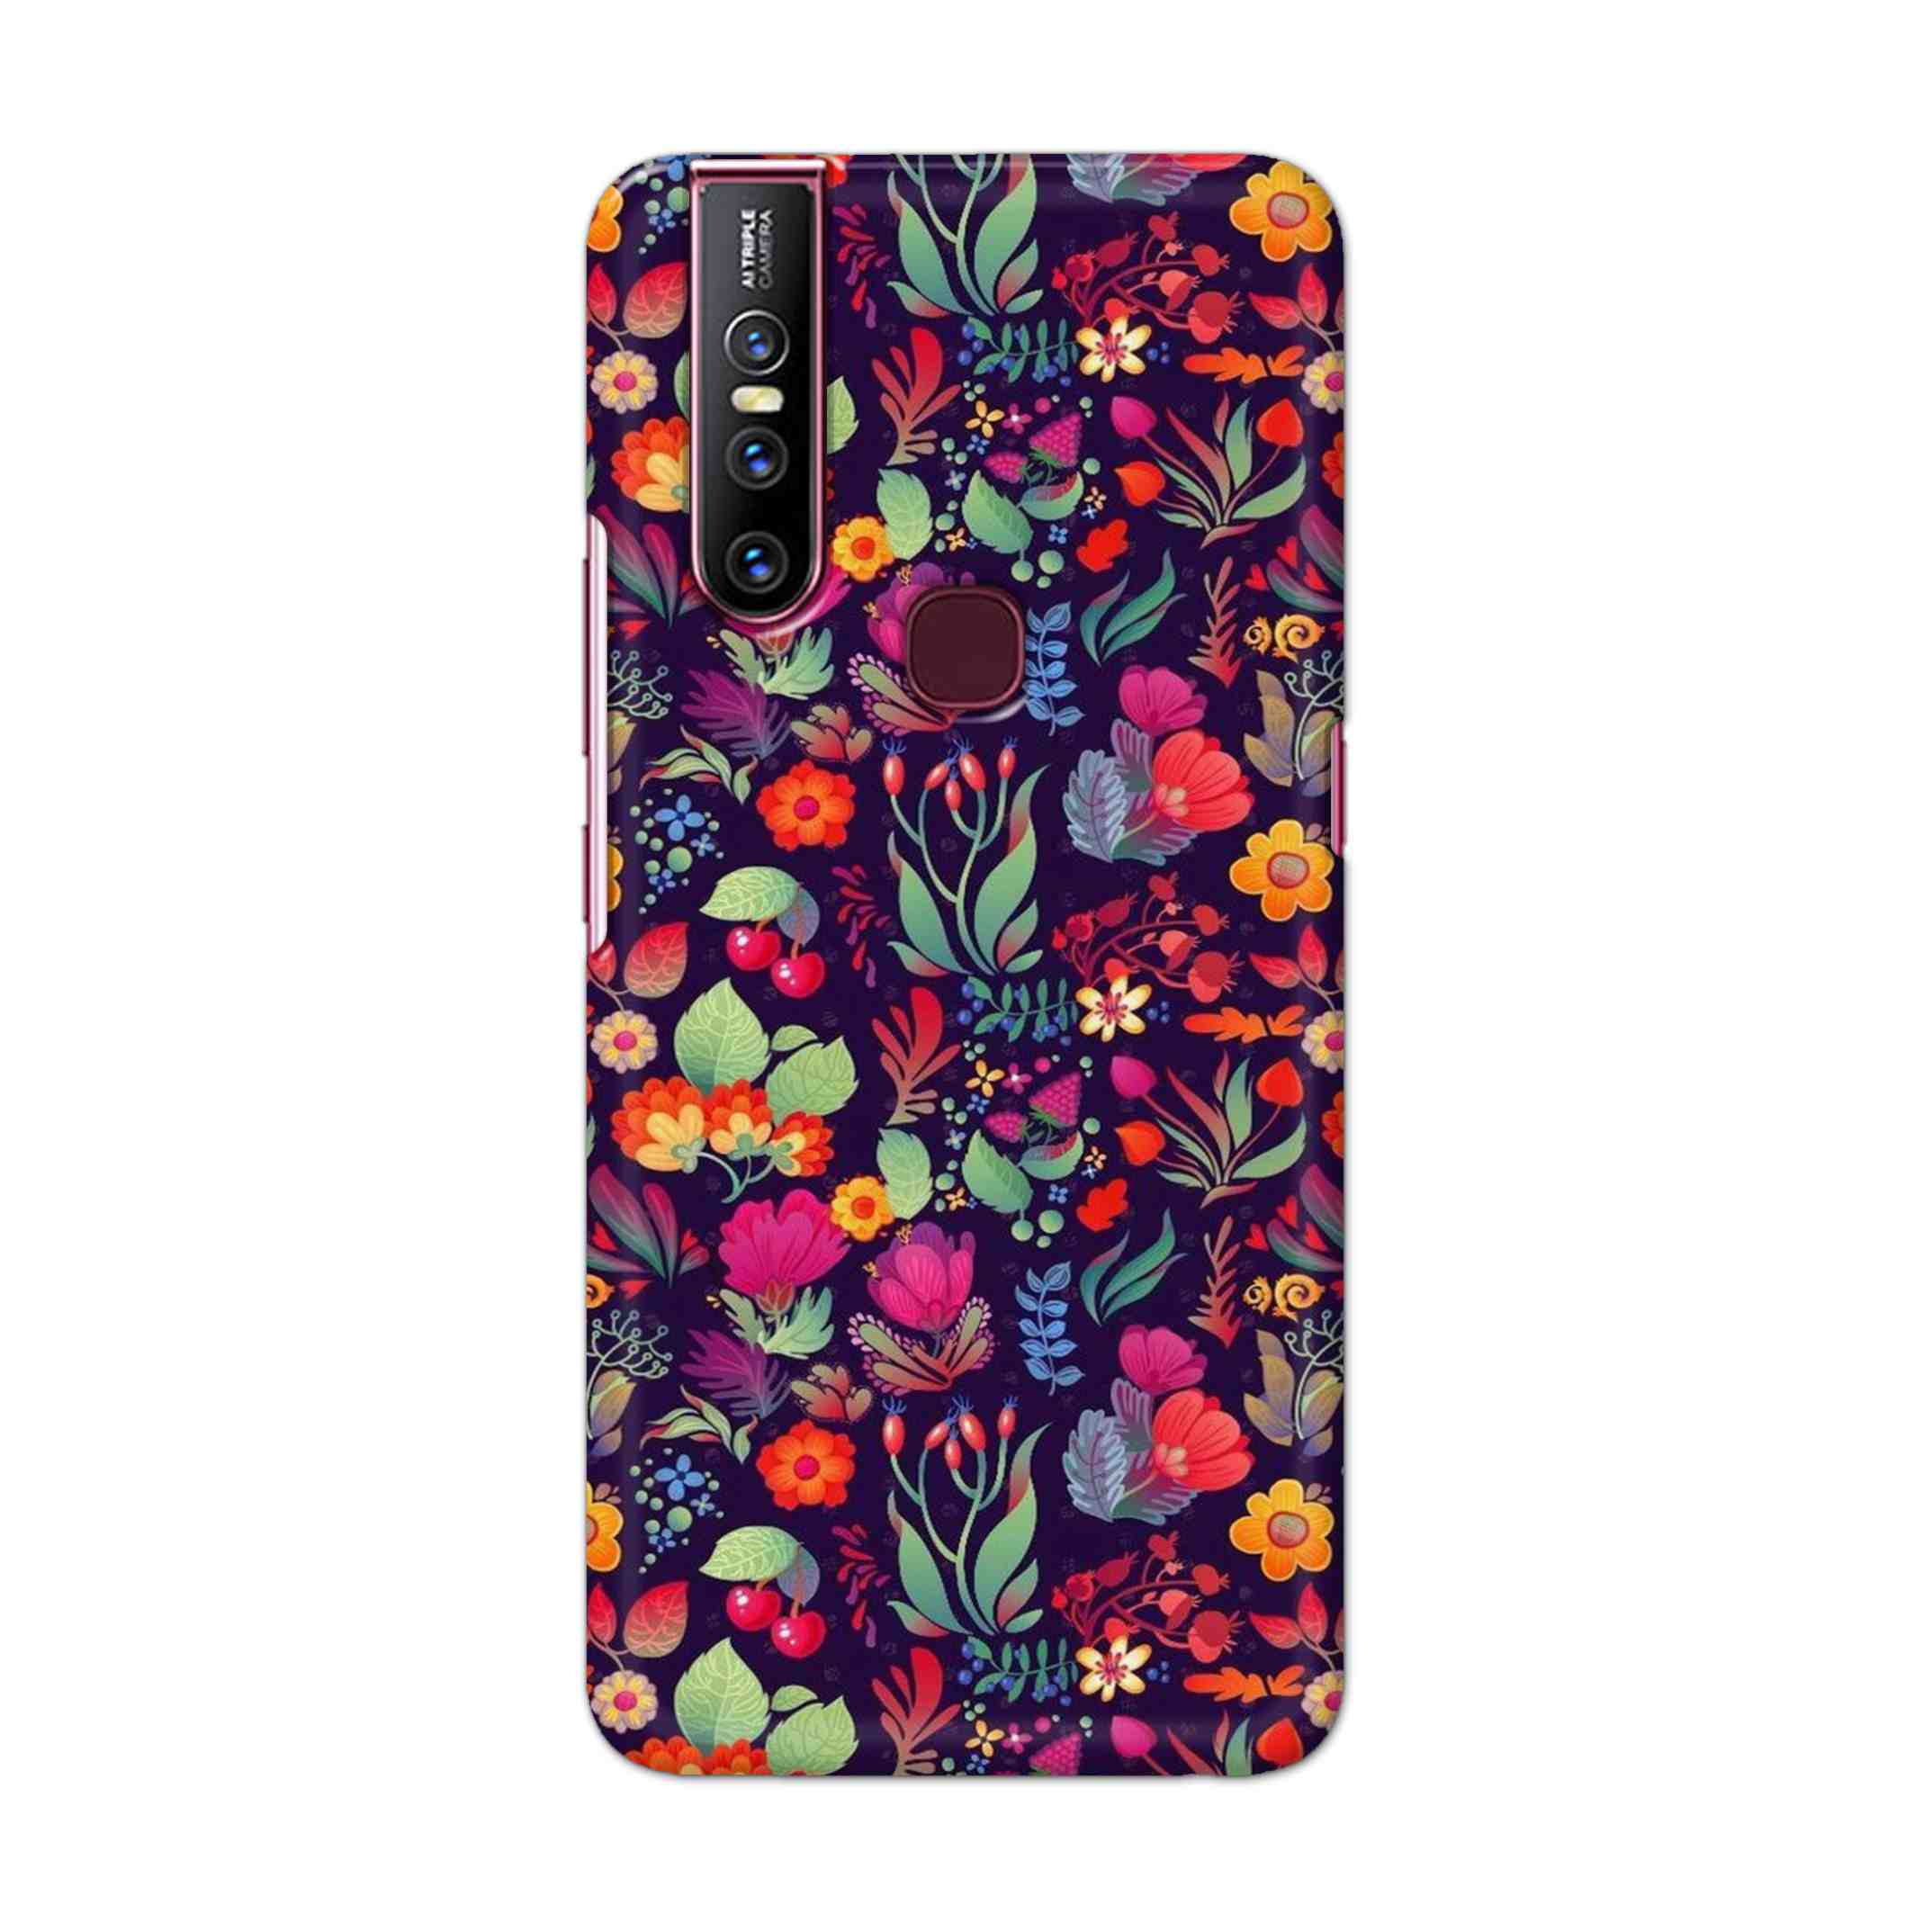 Buy Fruits Flower Hard Back Mobile Phone Case Cover For Vivo V15 Online